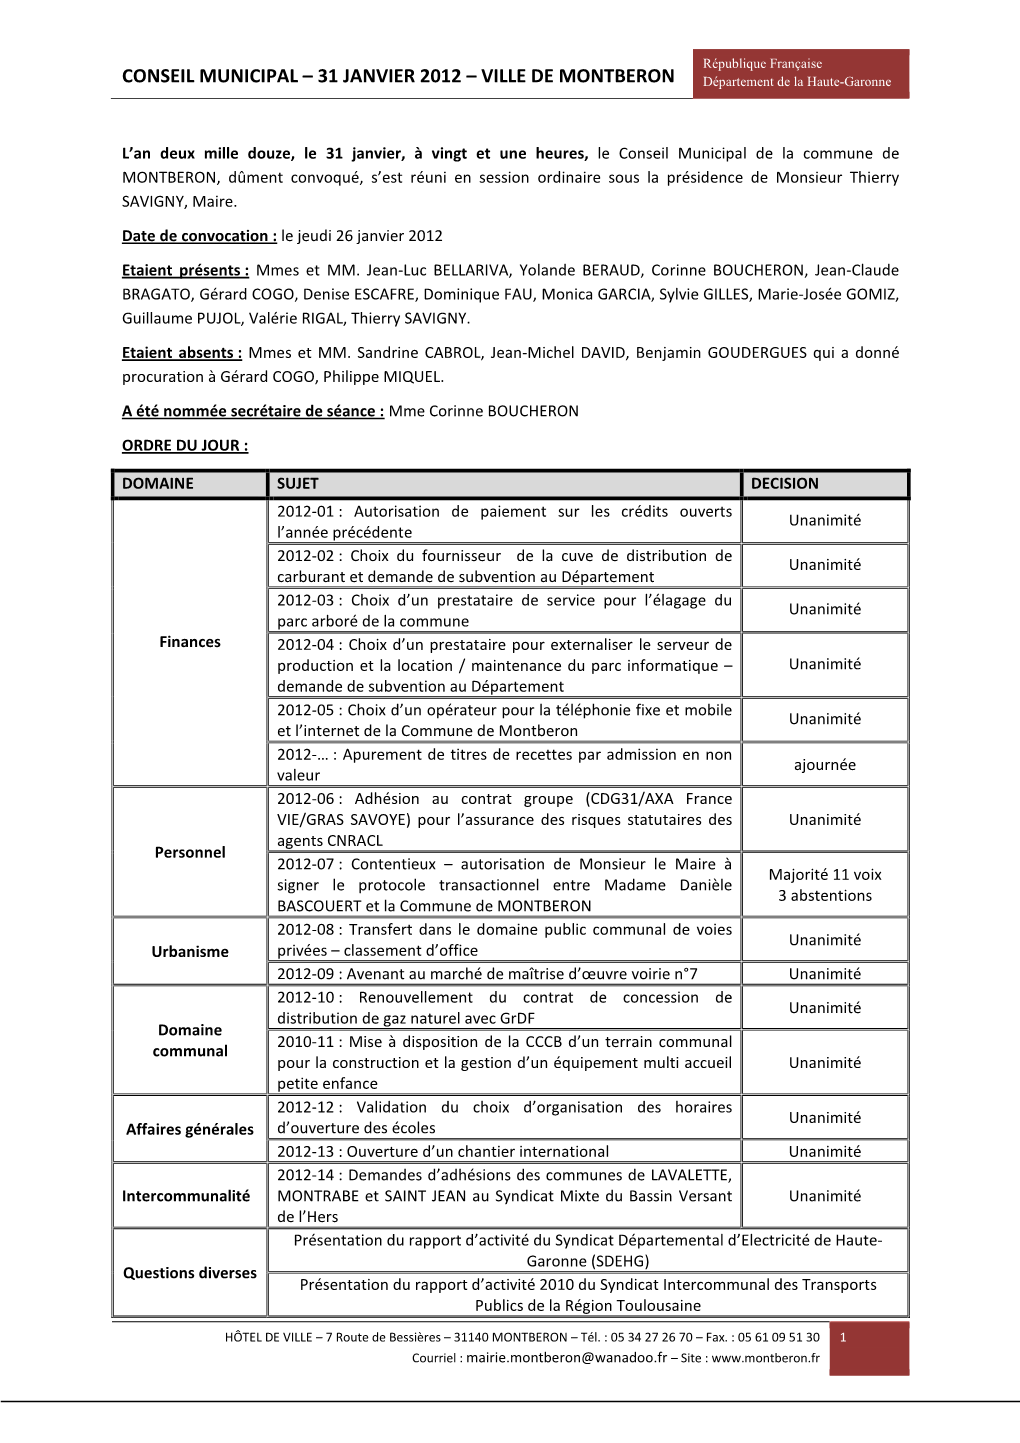 CONSEIL MUNICIPAL – 31 JANVIER 2012 – VILLE DE MONTBERON Département De La Haute-Garonne